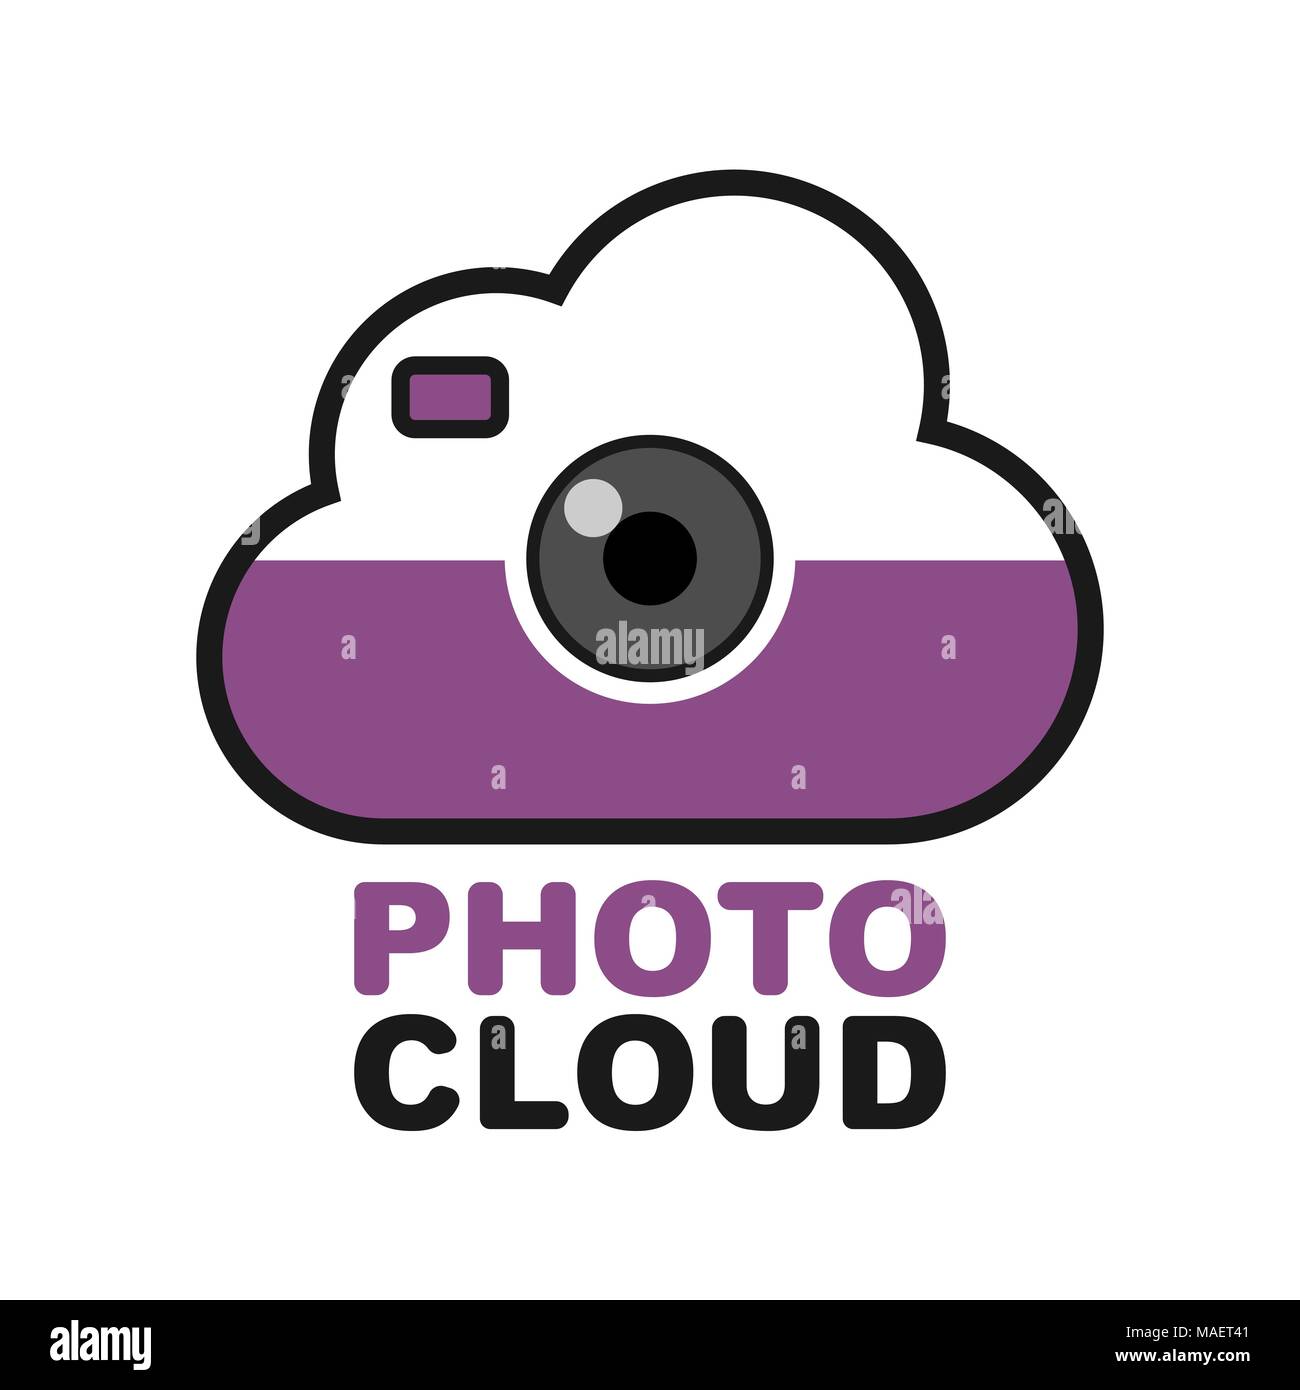 Cloud camera logo. Photo video control icon Stock Vector